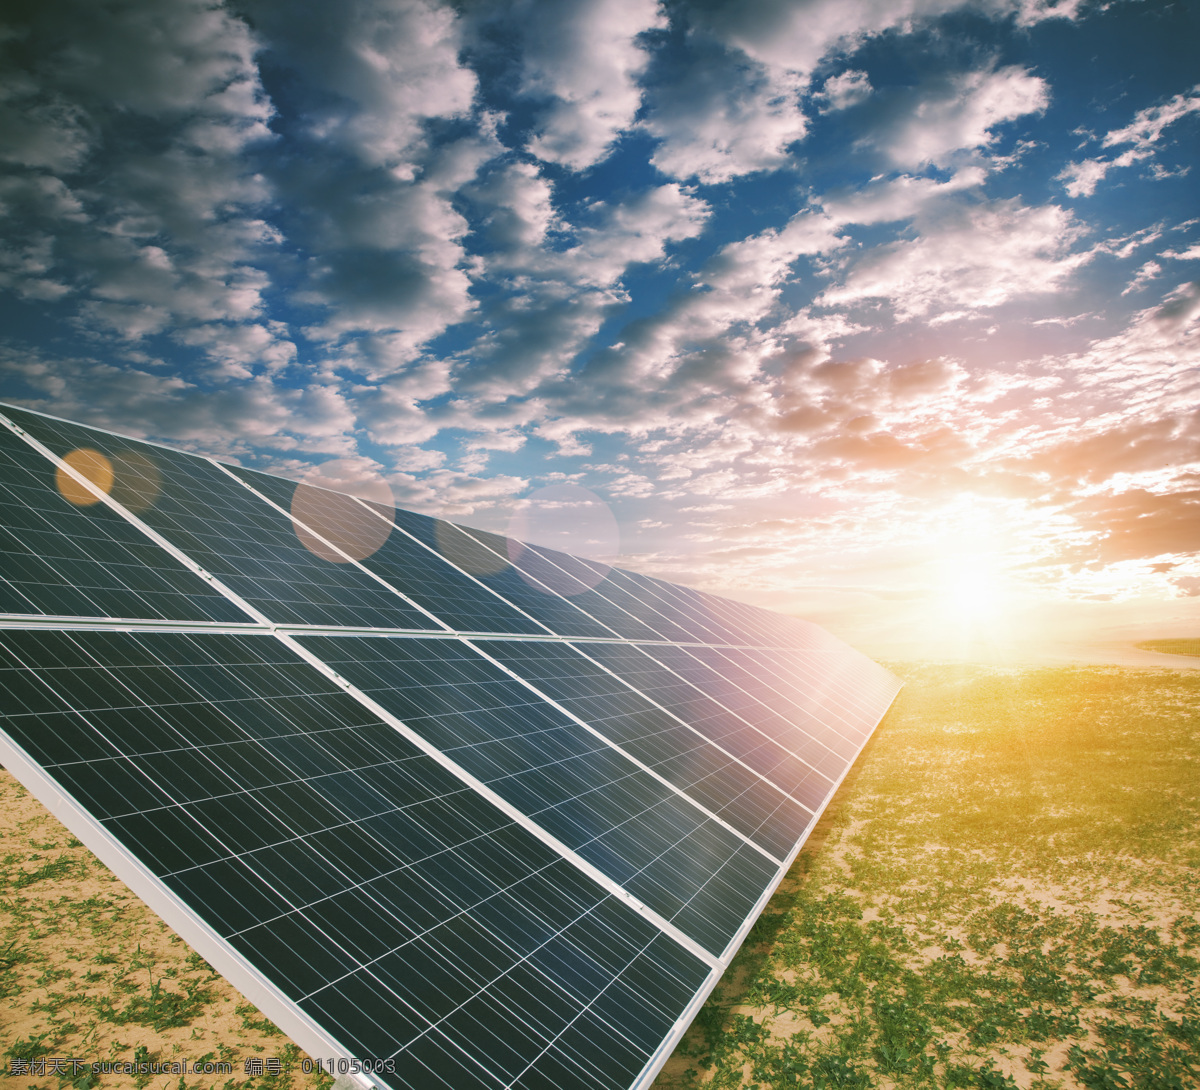 阳光 下 太阳能 电池板 节能环保 绿色环保 能量板 云朵 其他类别 生活百科 灰色